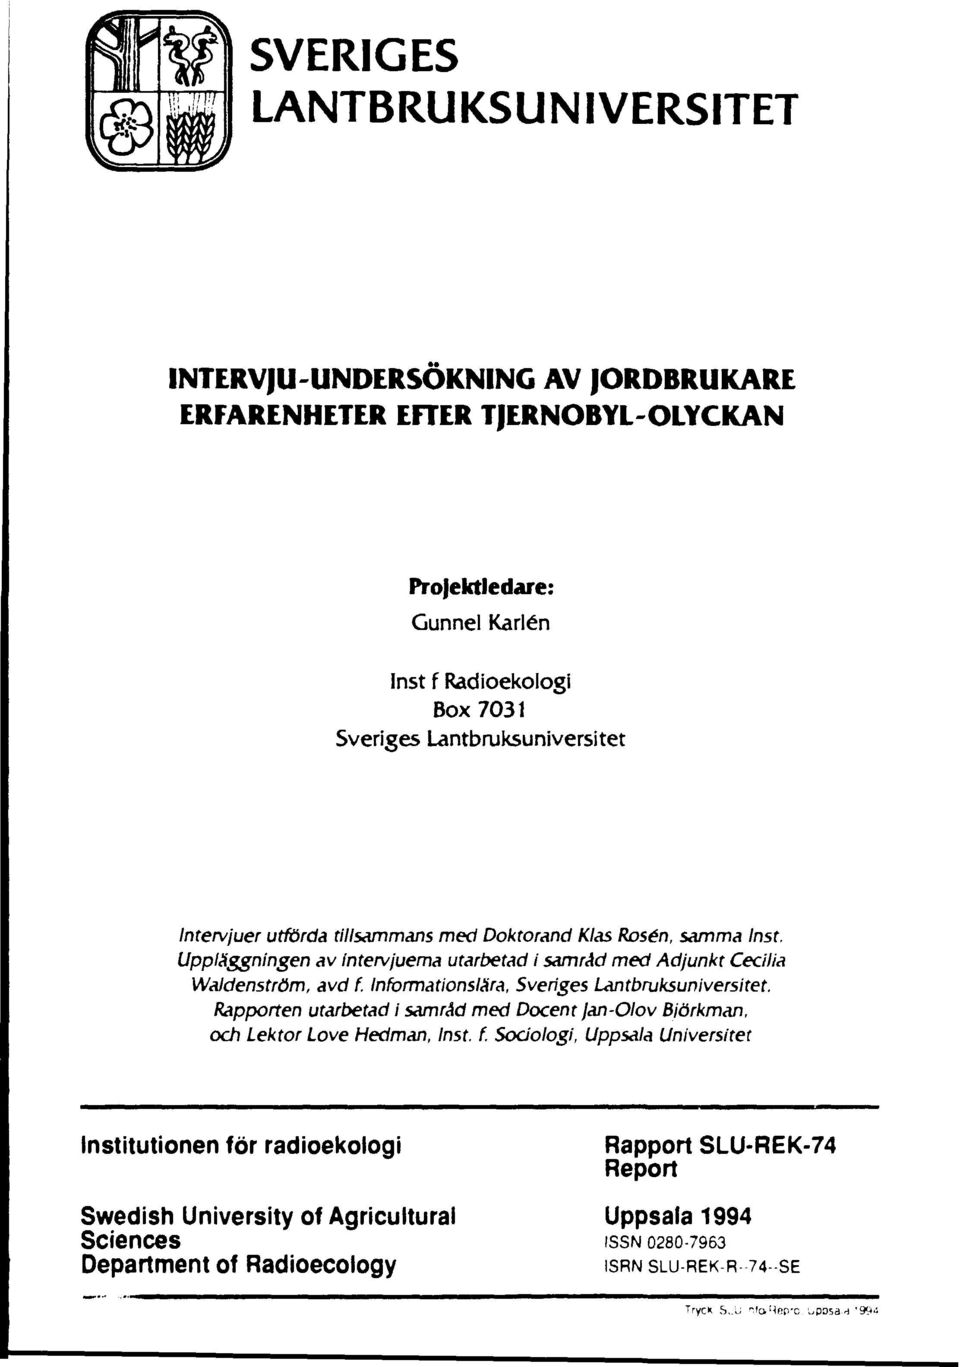 Informationslära, Sveriges Lantbruksuniversitet. Rapporten utarbetad i samråd med Docent jan-olov Björkman, och Lektor Love Hedman, Inst. f.